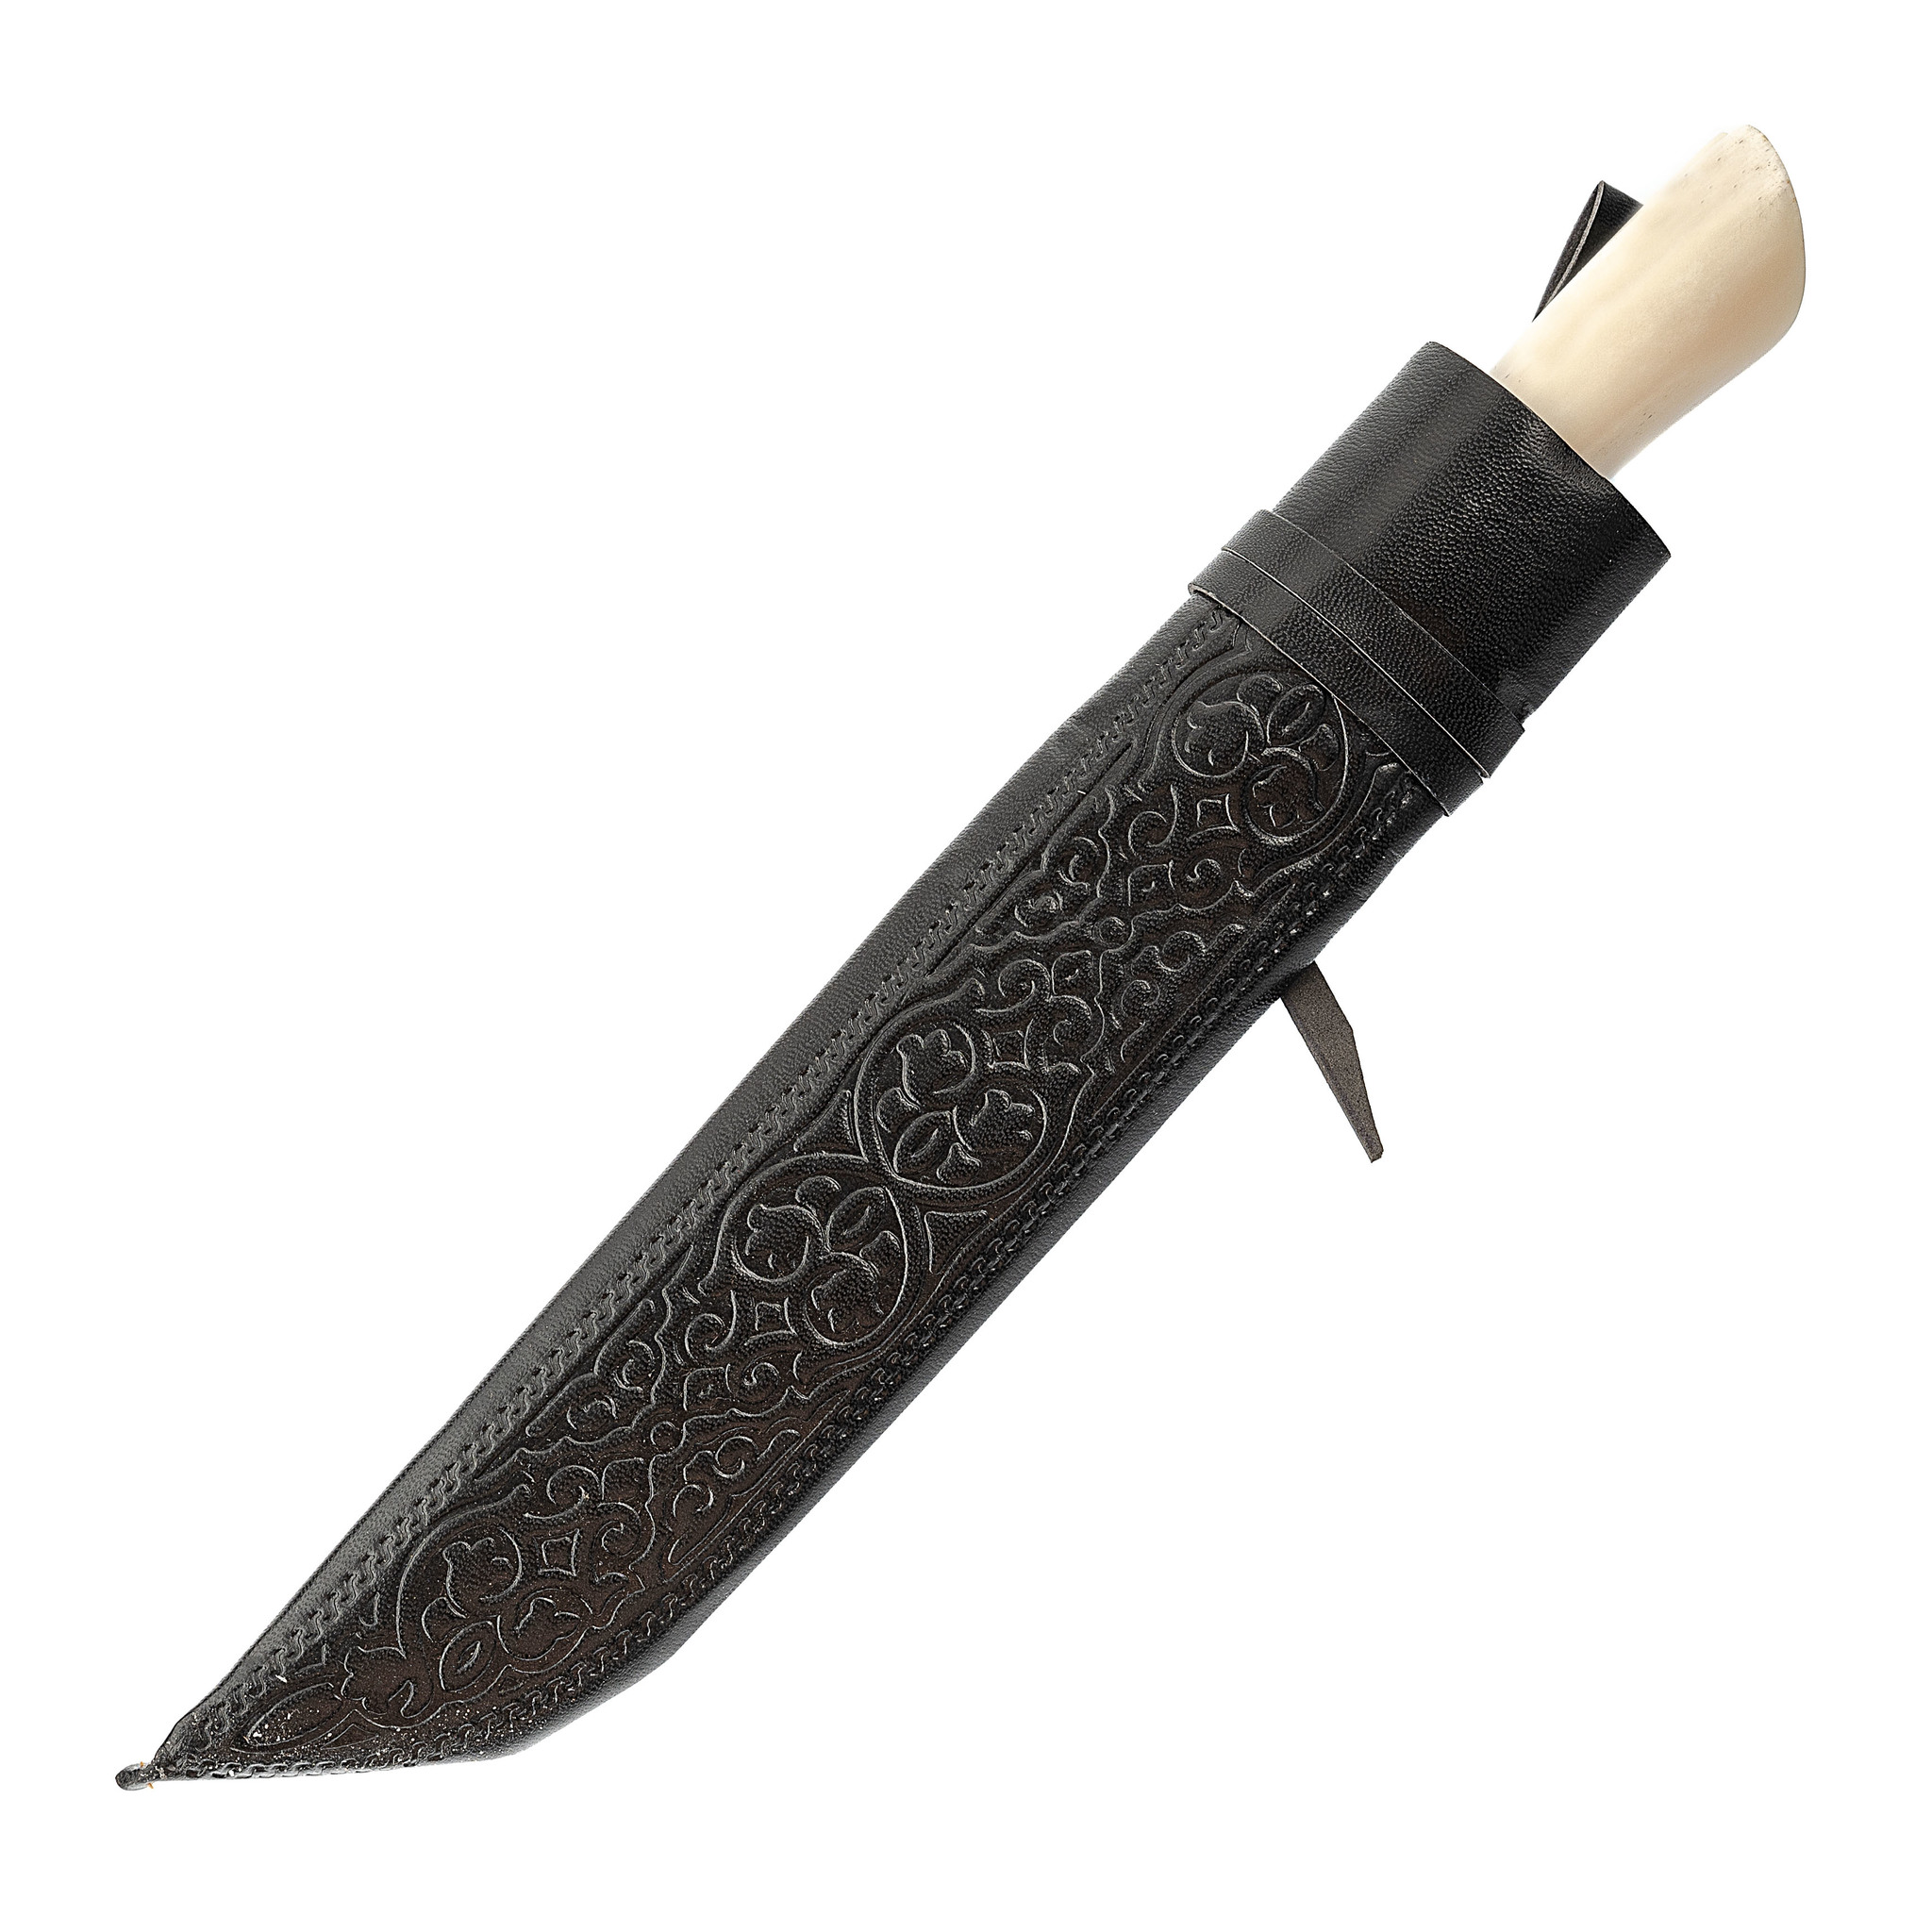 фото Пчак большой, кость, сухма, рукоять витая, гарда олово с садафом узбекские ножи